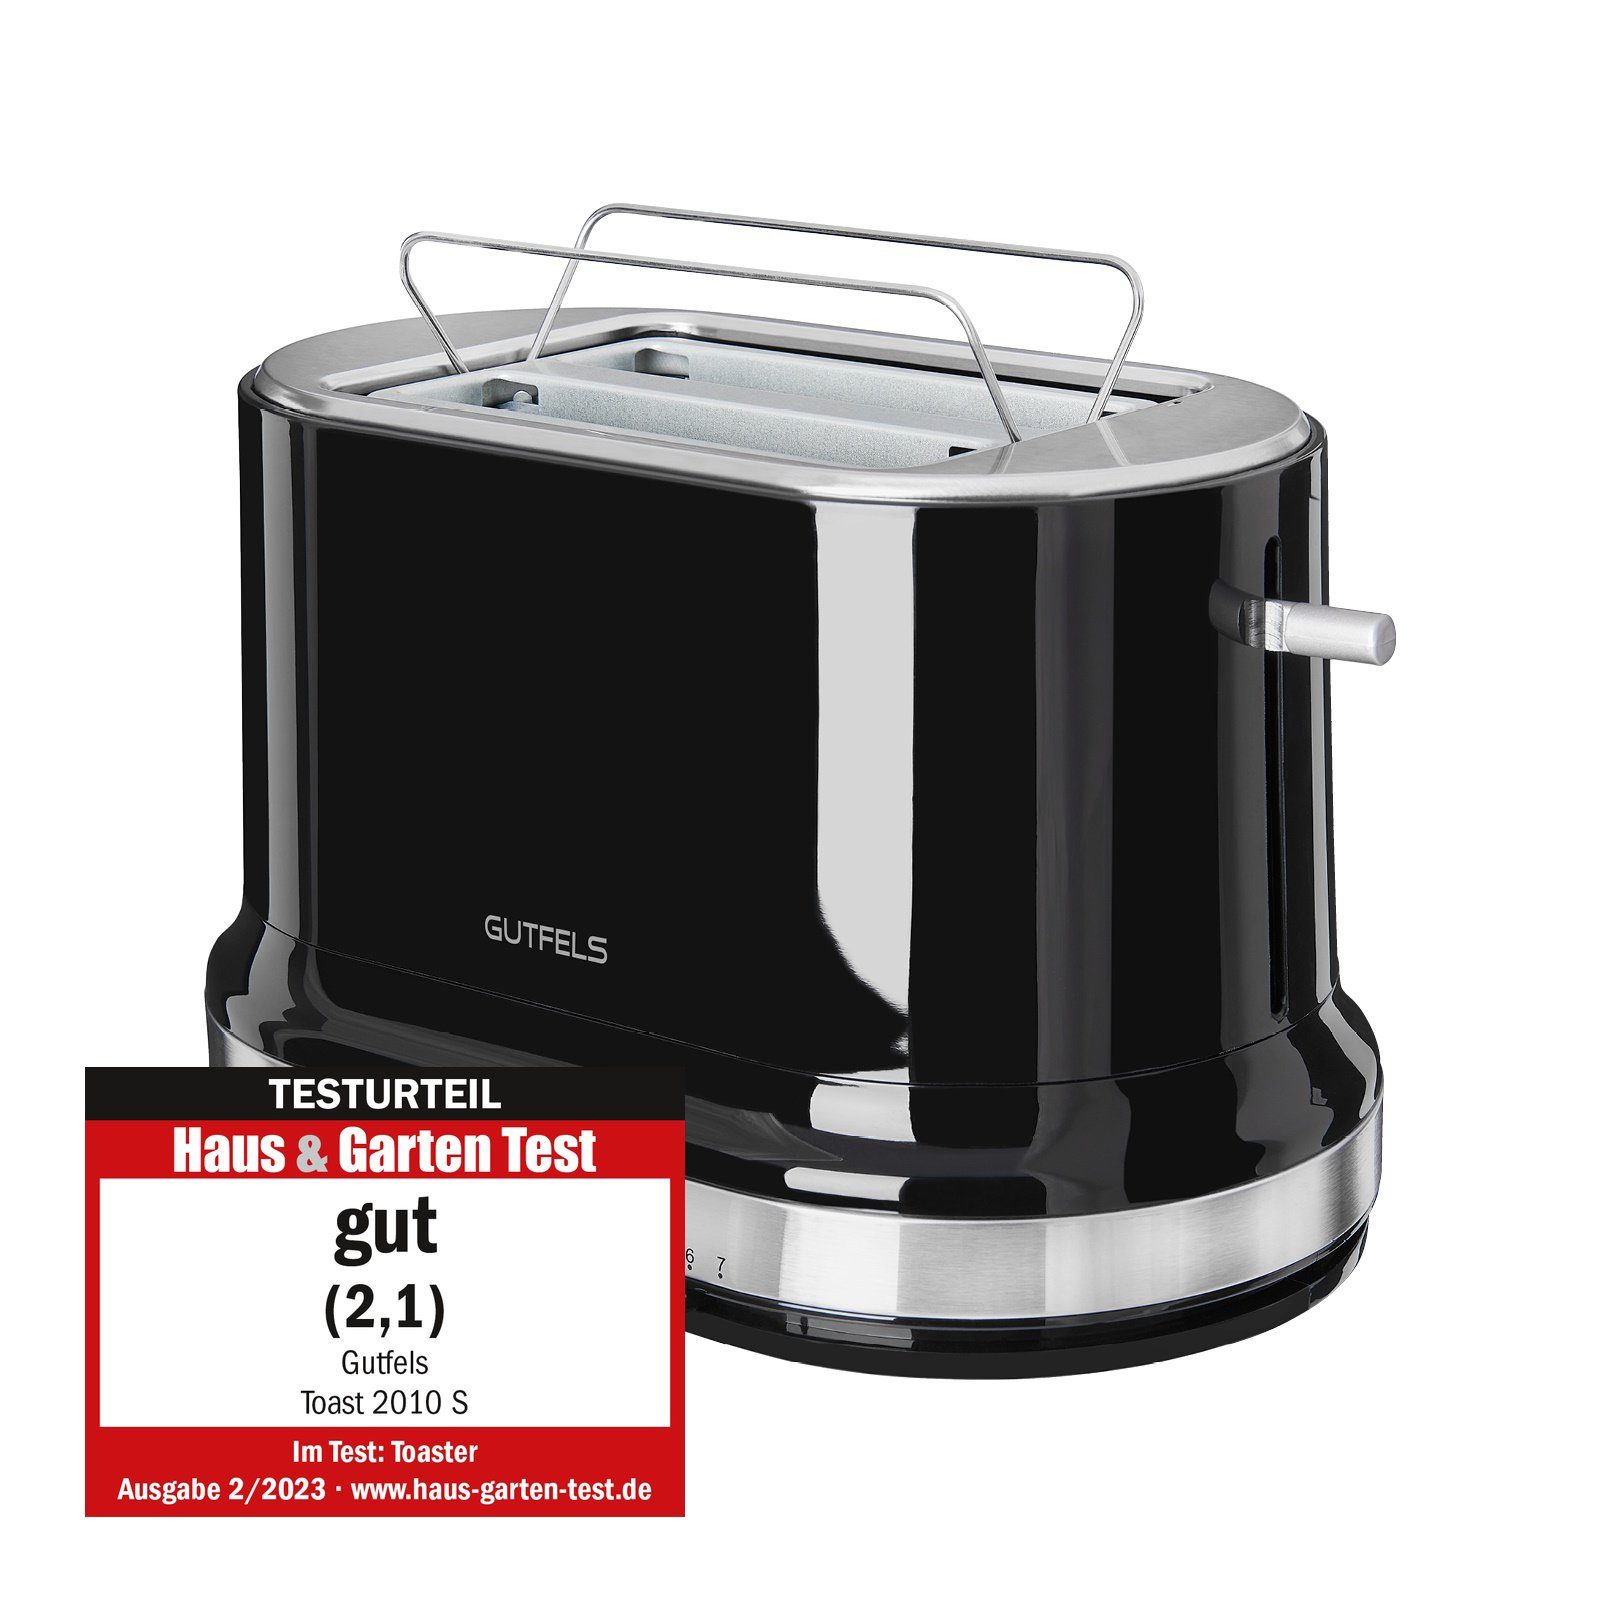 Gutfels Toaster TOAST 2010 S, für ein einfaches W, mit Design-Toaster Entnehmen nach und und Defrost-Funktion Schlitze, ermöglicht Toasten 2 870 Scheiben, 2 kurze sicheres Höhenlift dem praktischer Brötchenaufsatz, Der